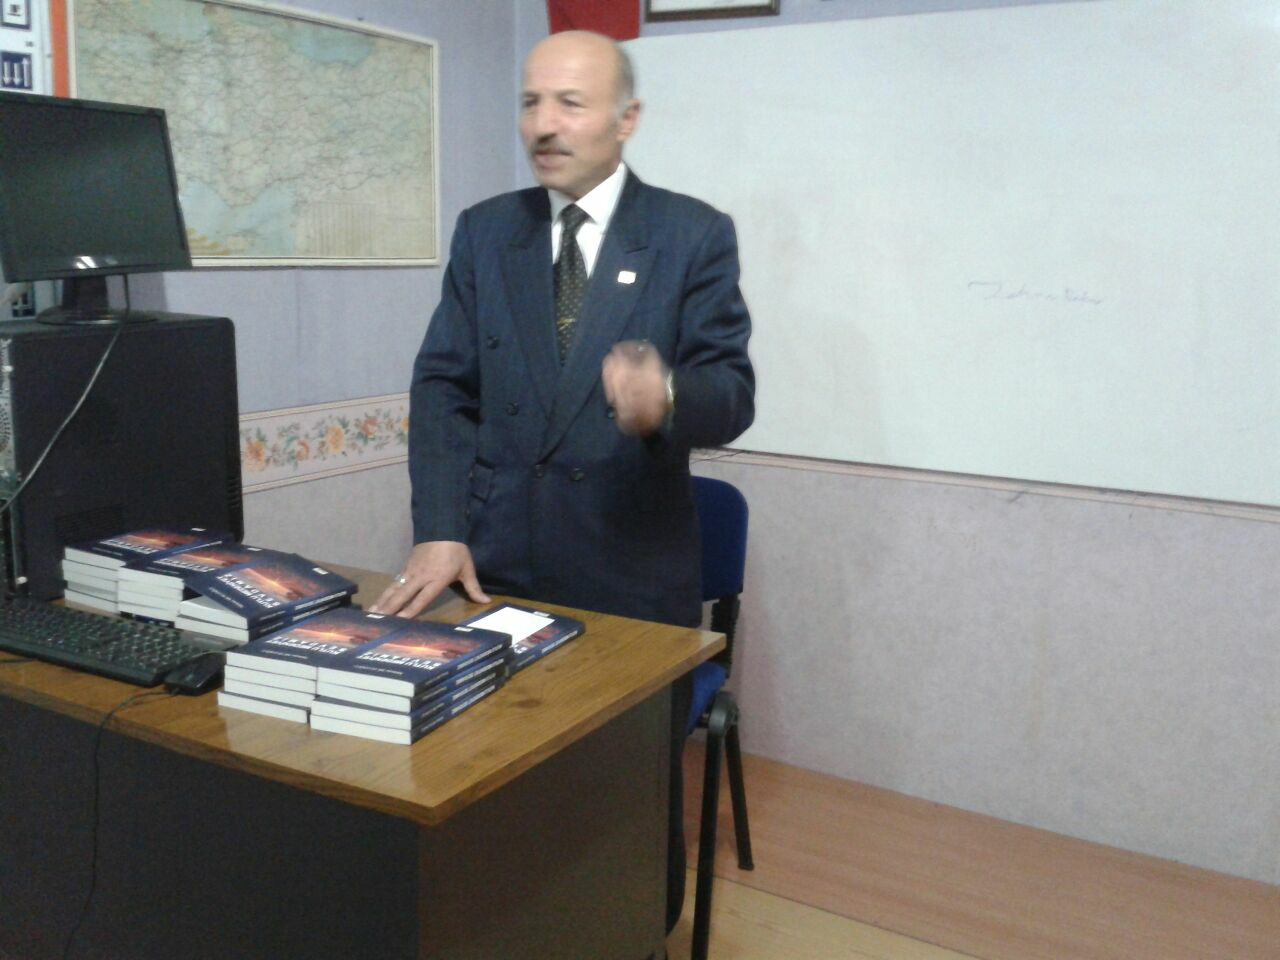 Trabzon'da Mehmet Mutluoğlu; "Kutlu Medeniyet Sevdamız" kitabını anlattı